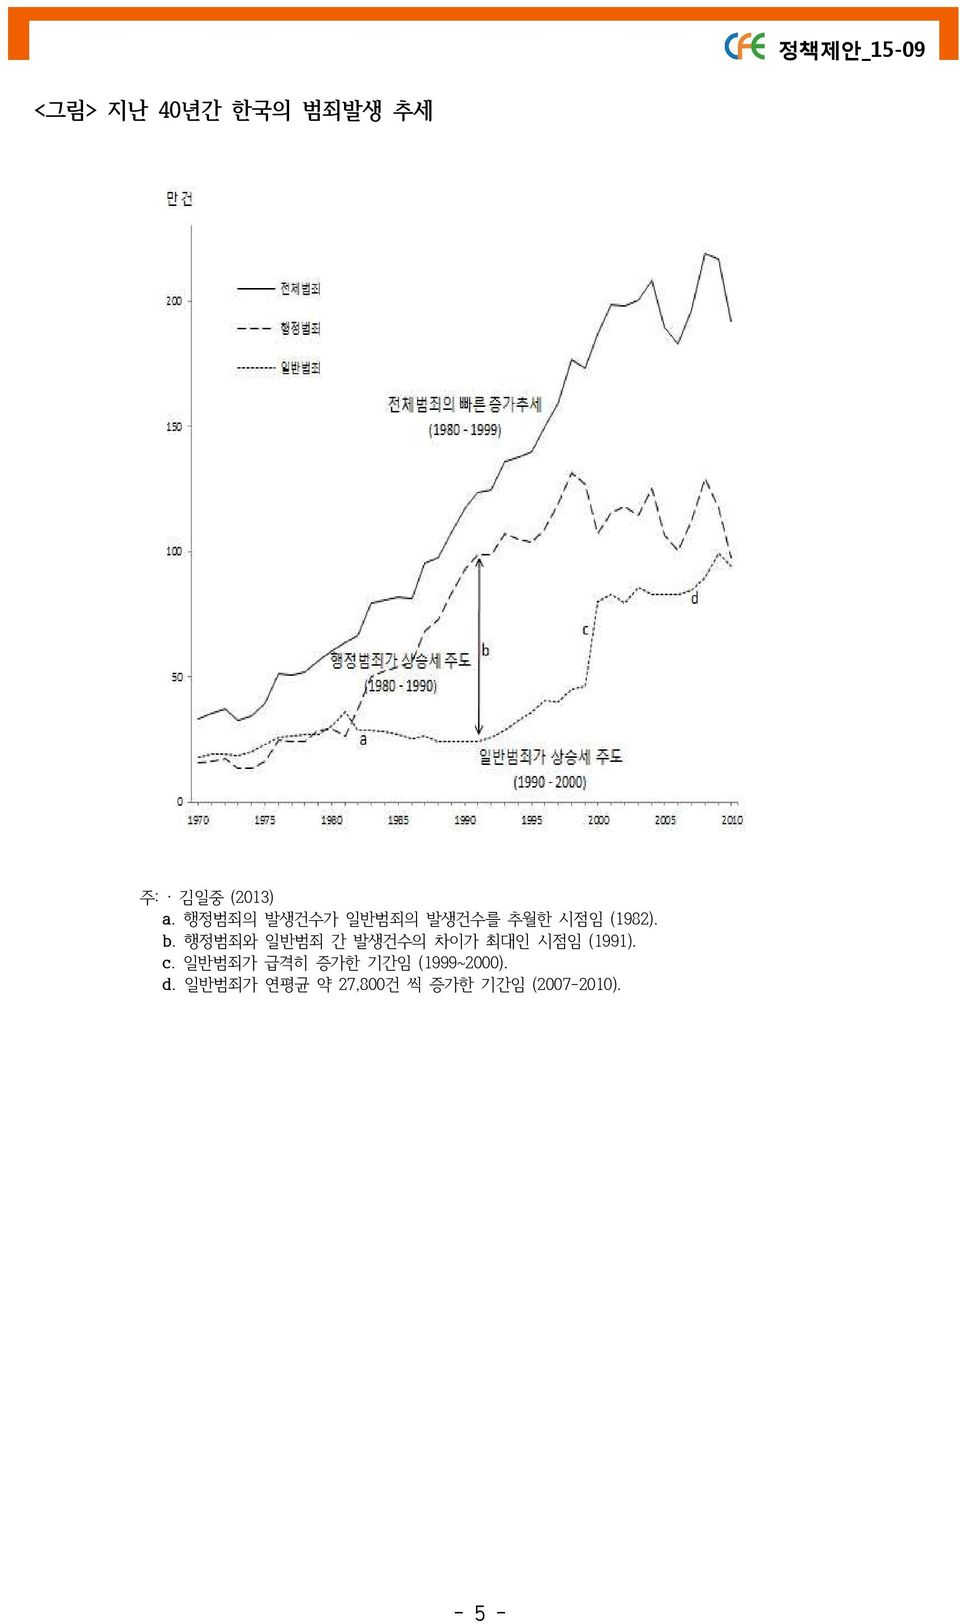 행정범죄와 일반범죄 간 발생건수의 차이가 최대인 시점임 (1991). c.